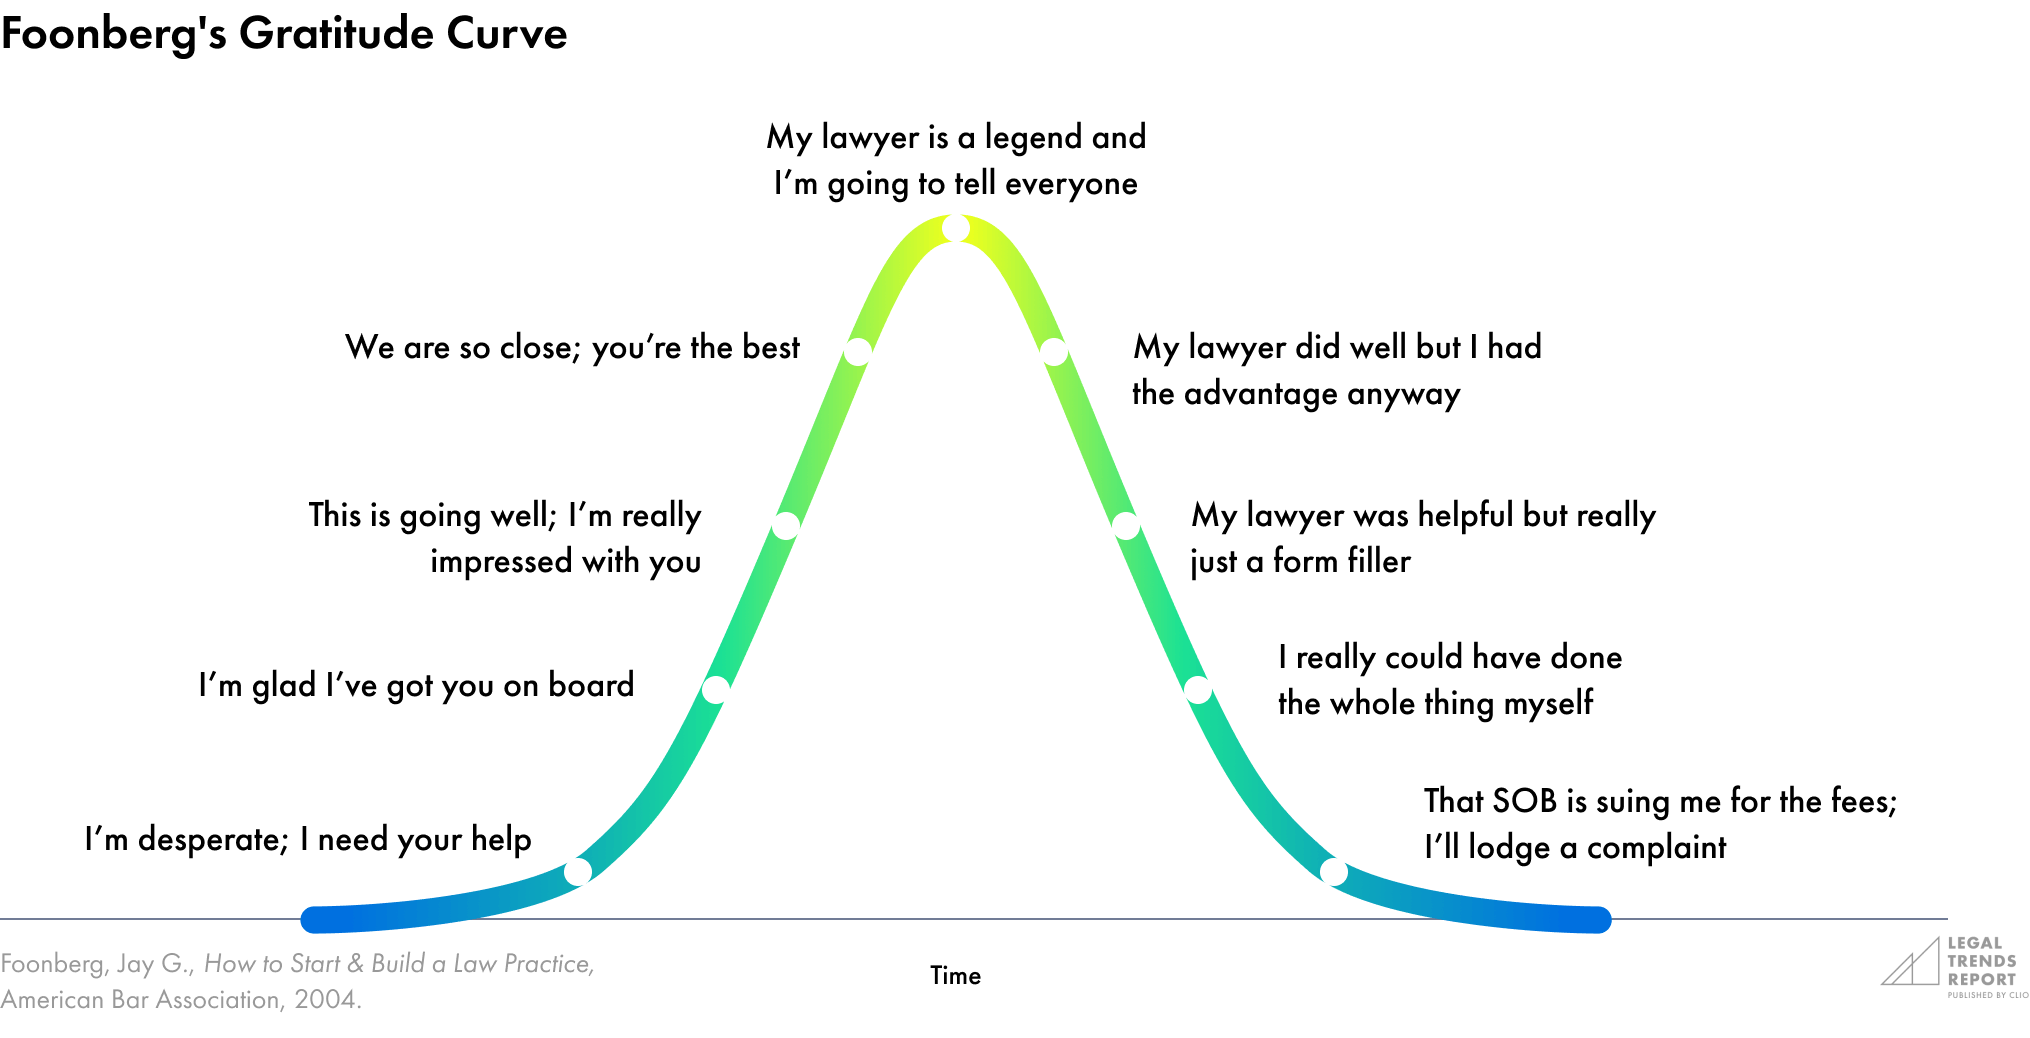 Foonberg's gratitude curve